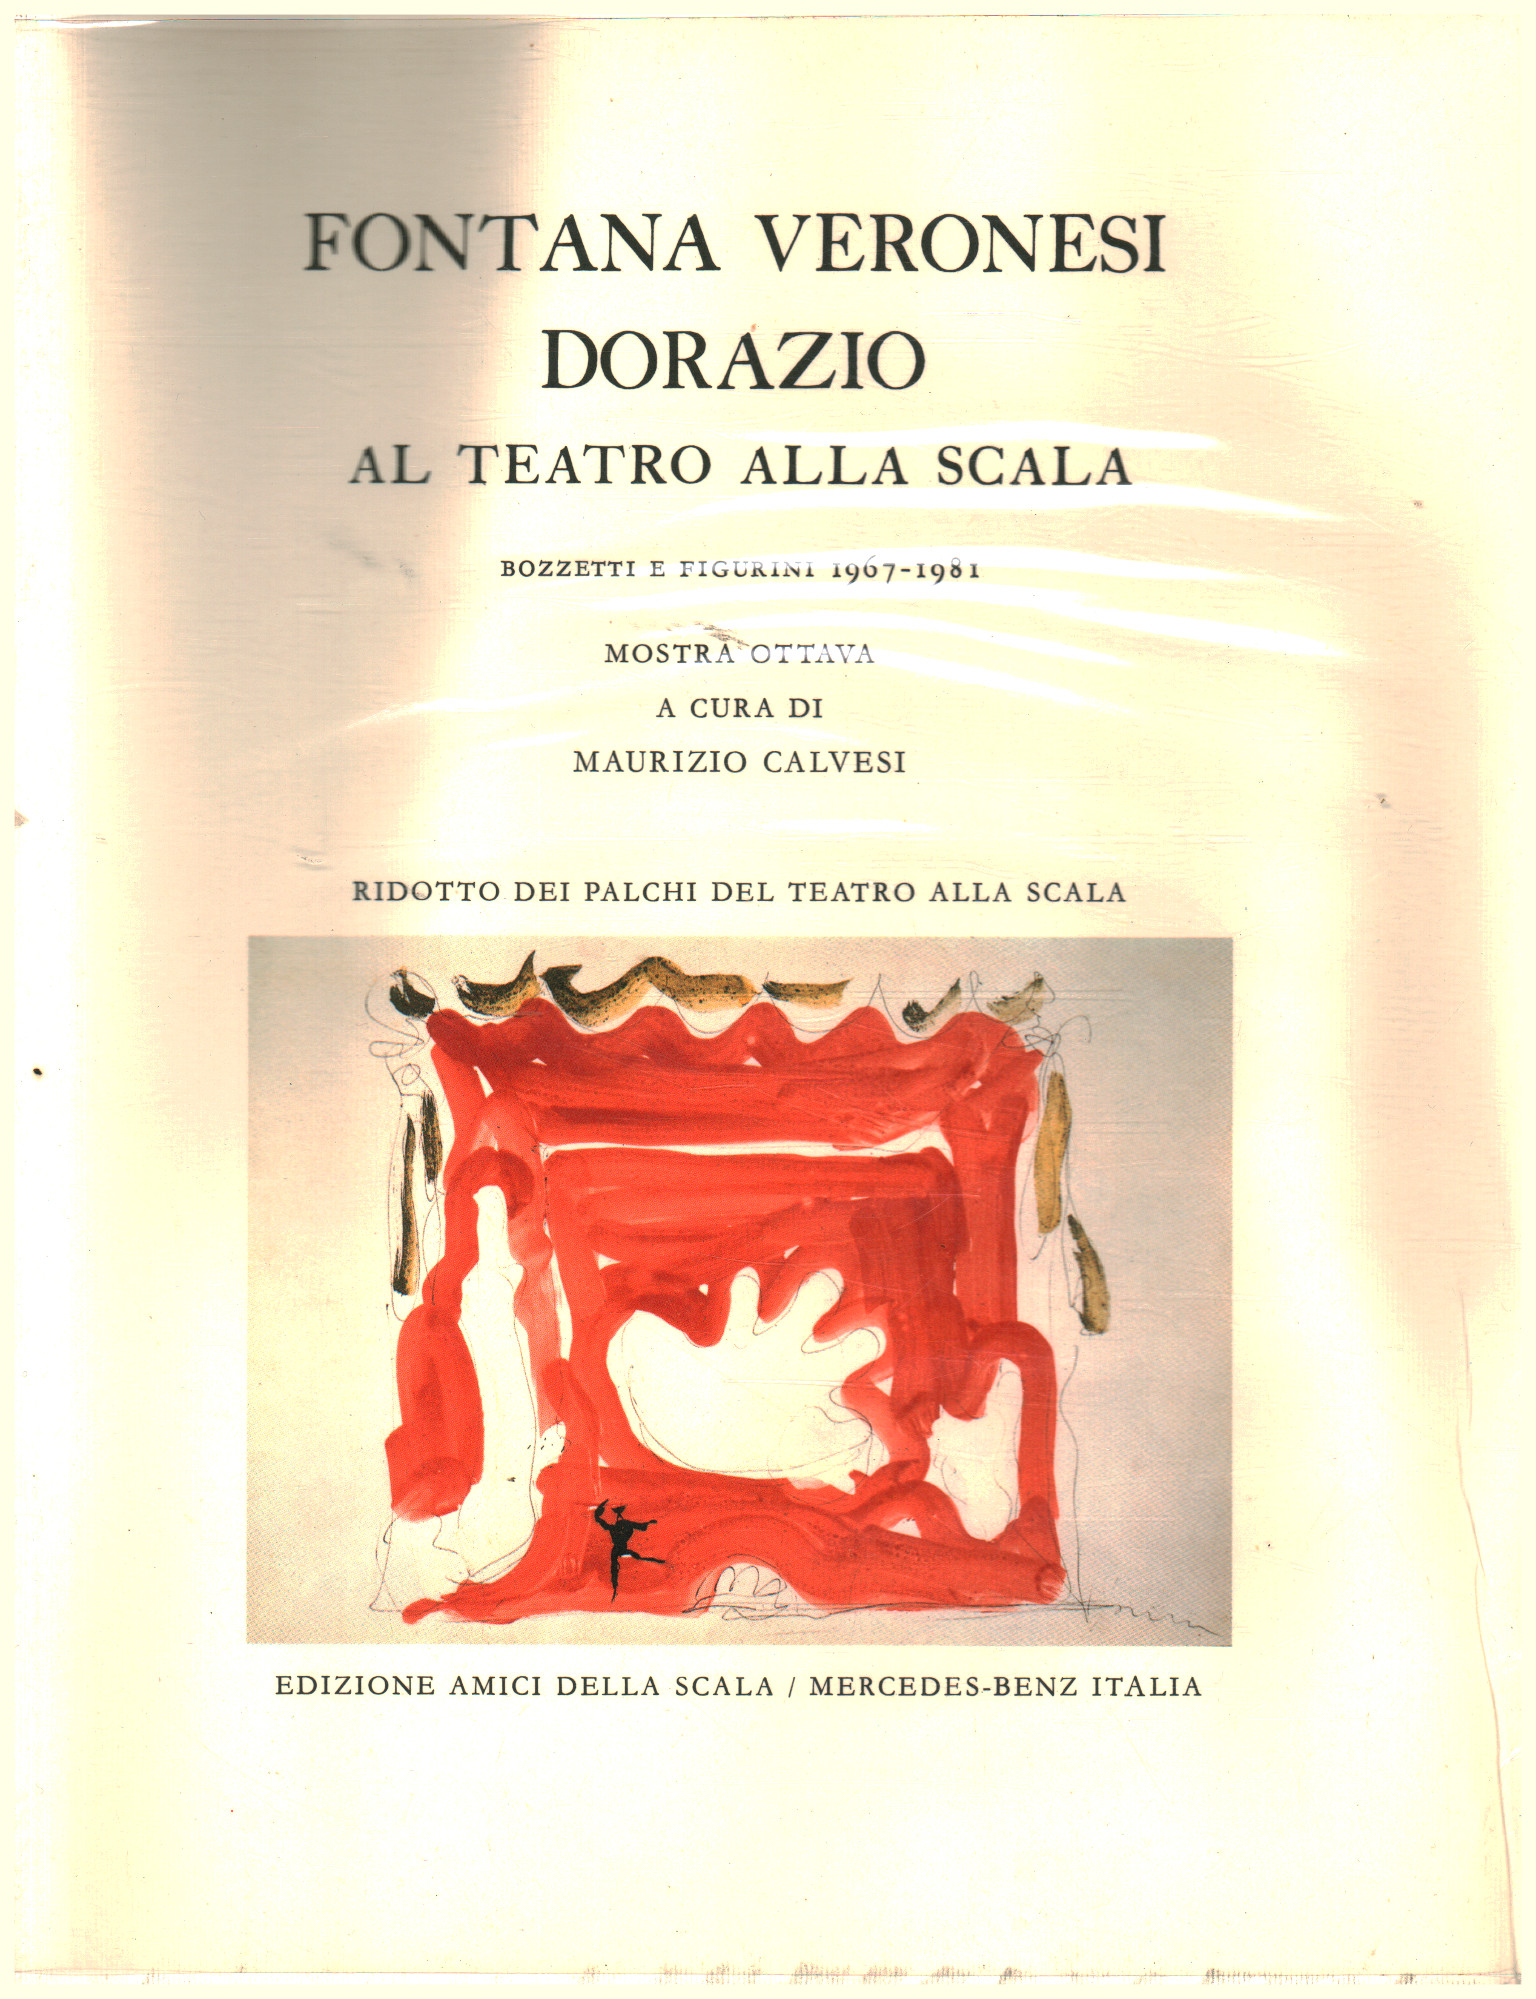 Veronesi Fountain Dorazio at the Teatro alla Scala, Maurizio Calvesi